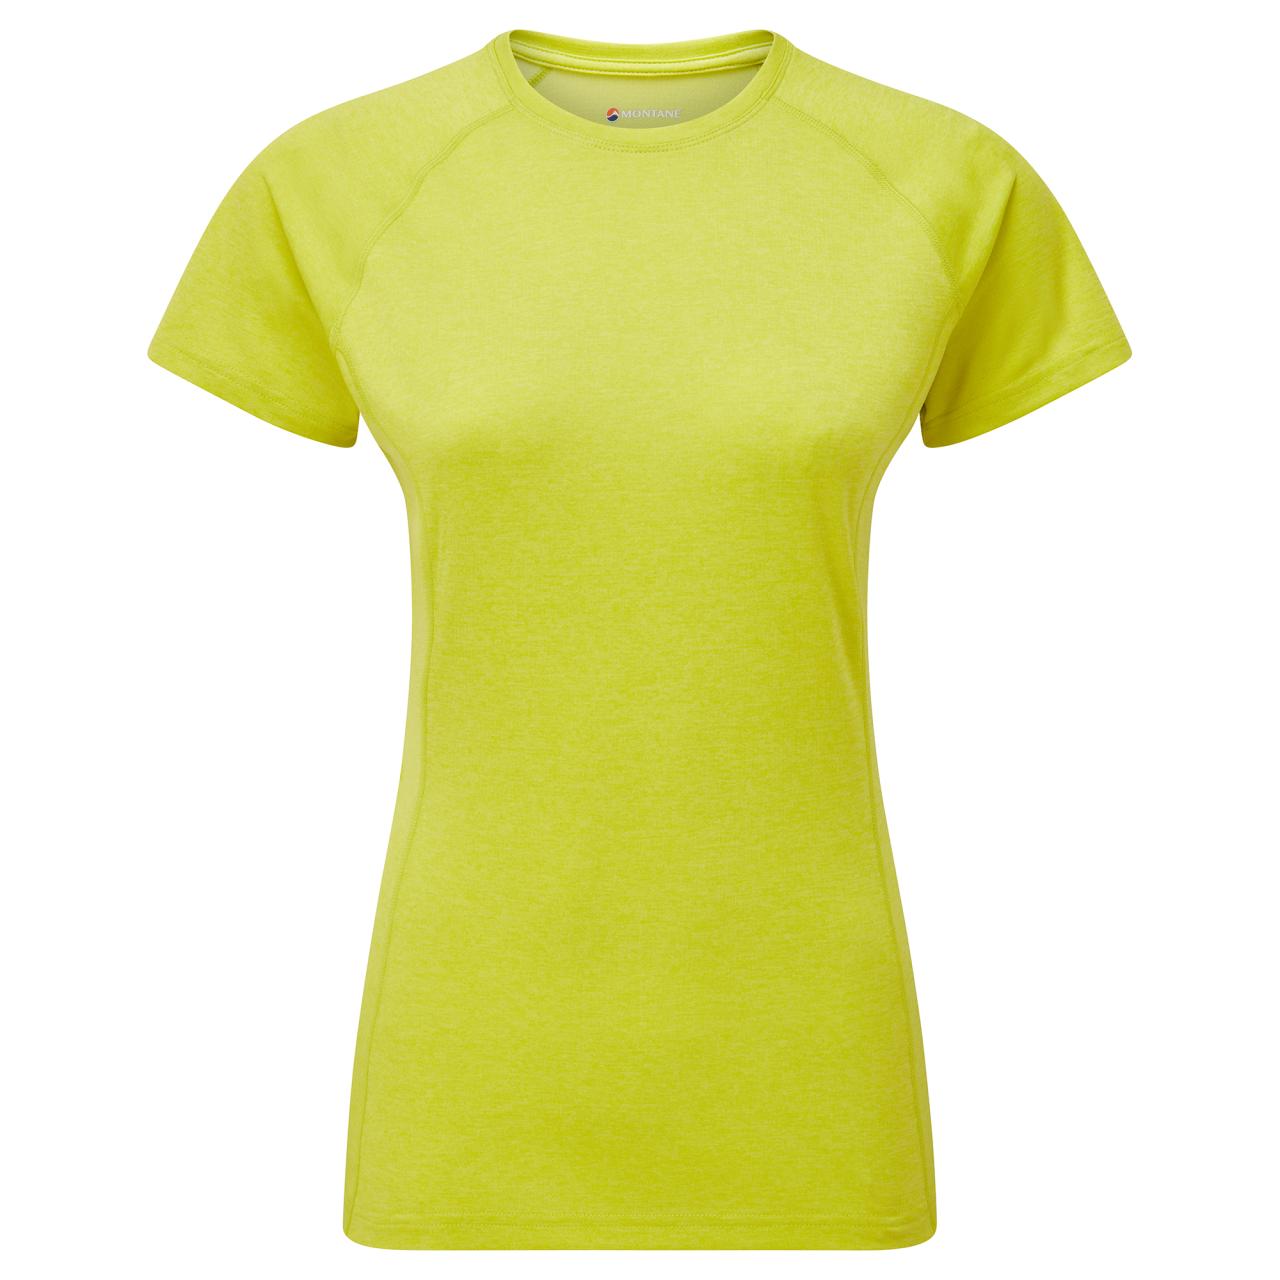 FEM DART T-SHIRT-CITRUS SPRING-UK16/XL dámské triko žlutozelené